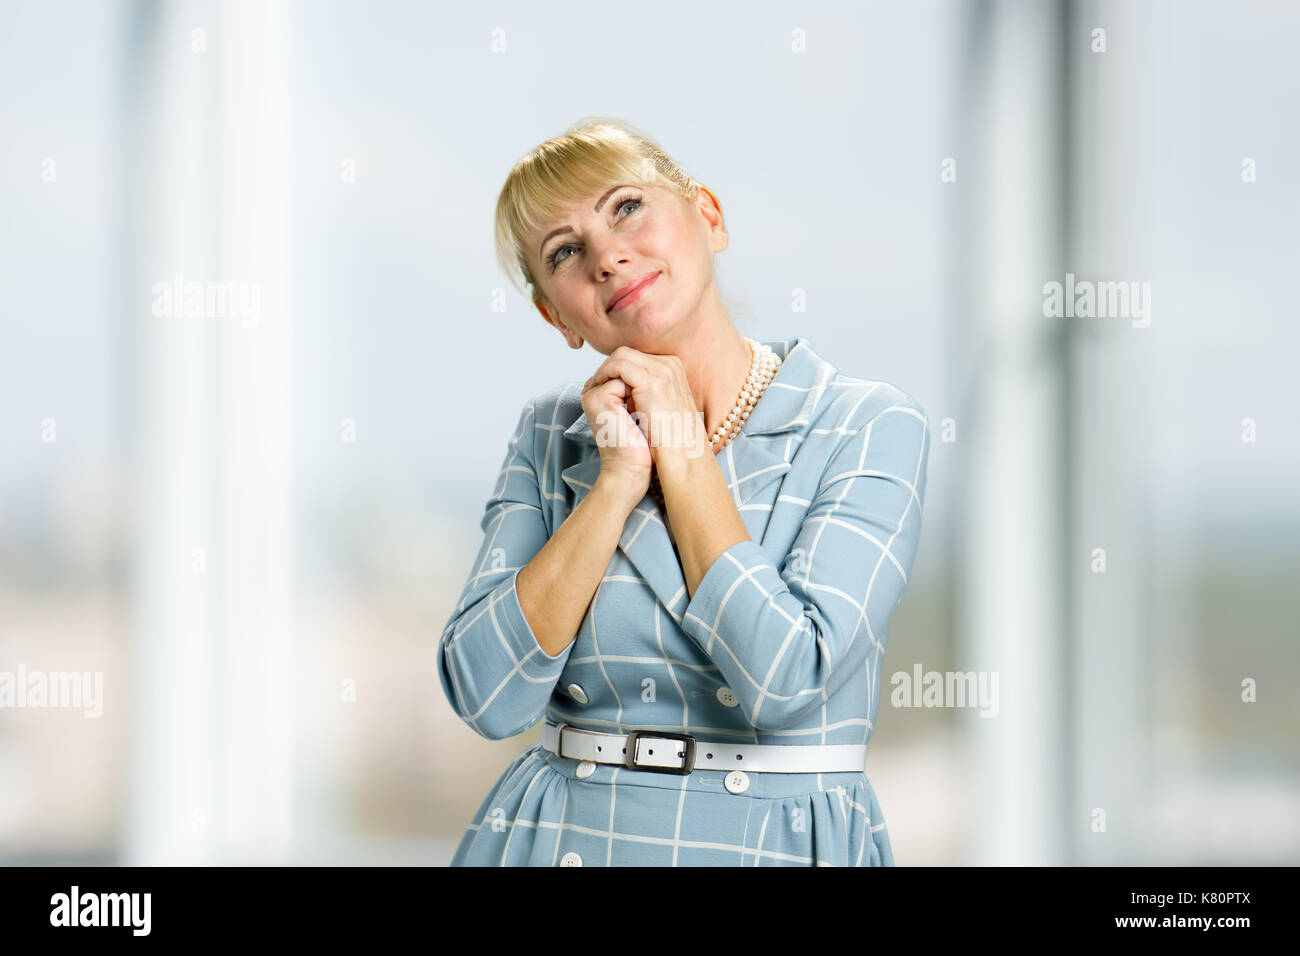 Portrait of smiling woman. Banque D'Images